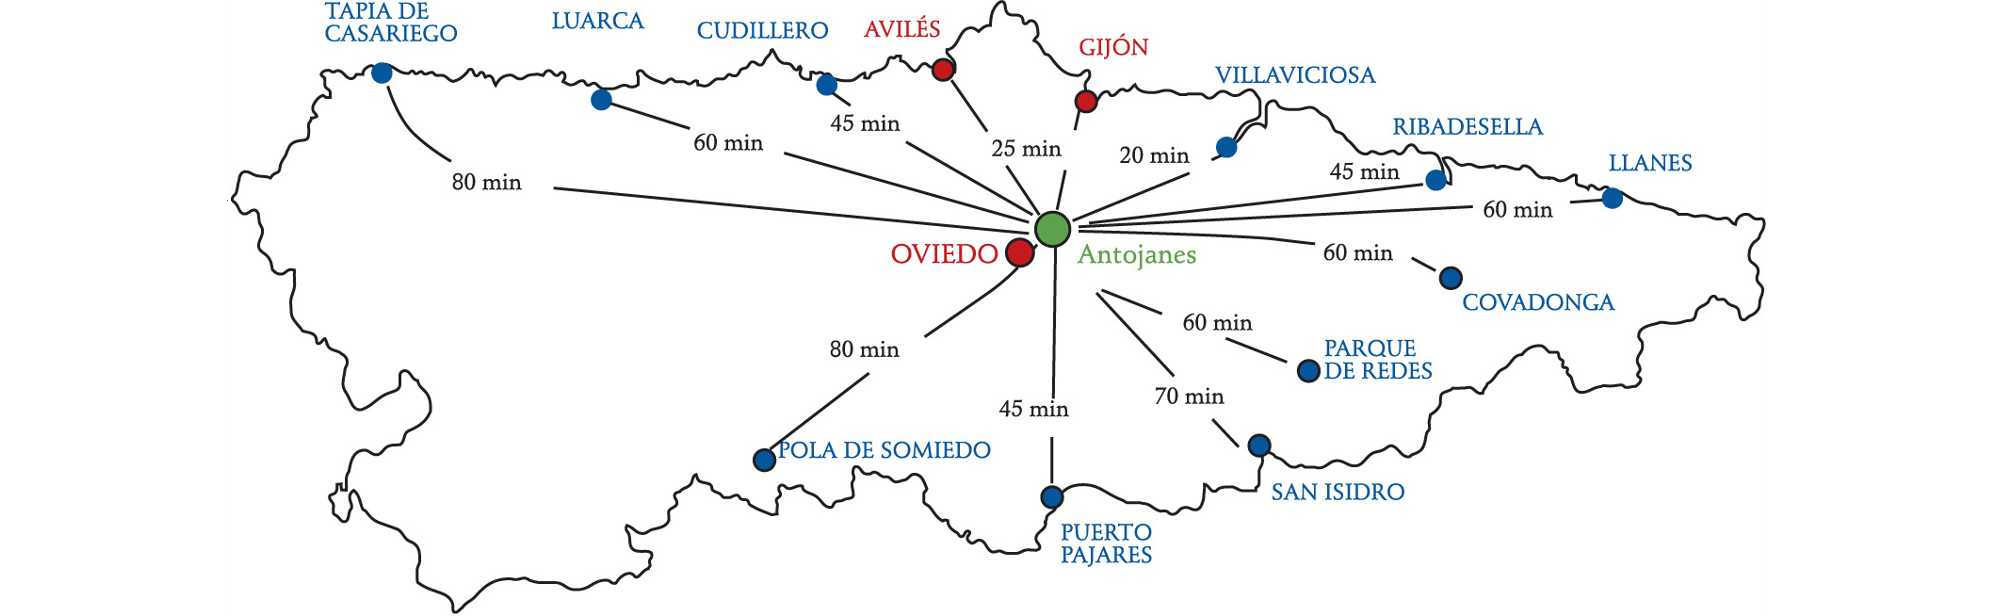 mapa-asturias-antojanes